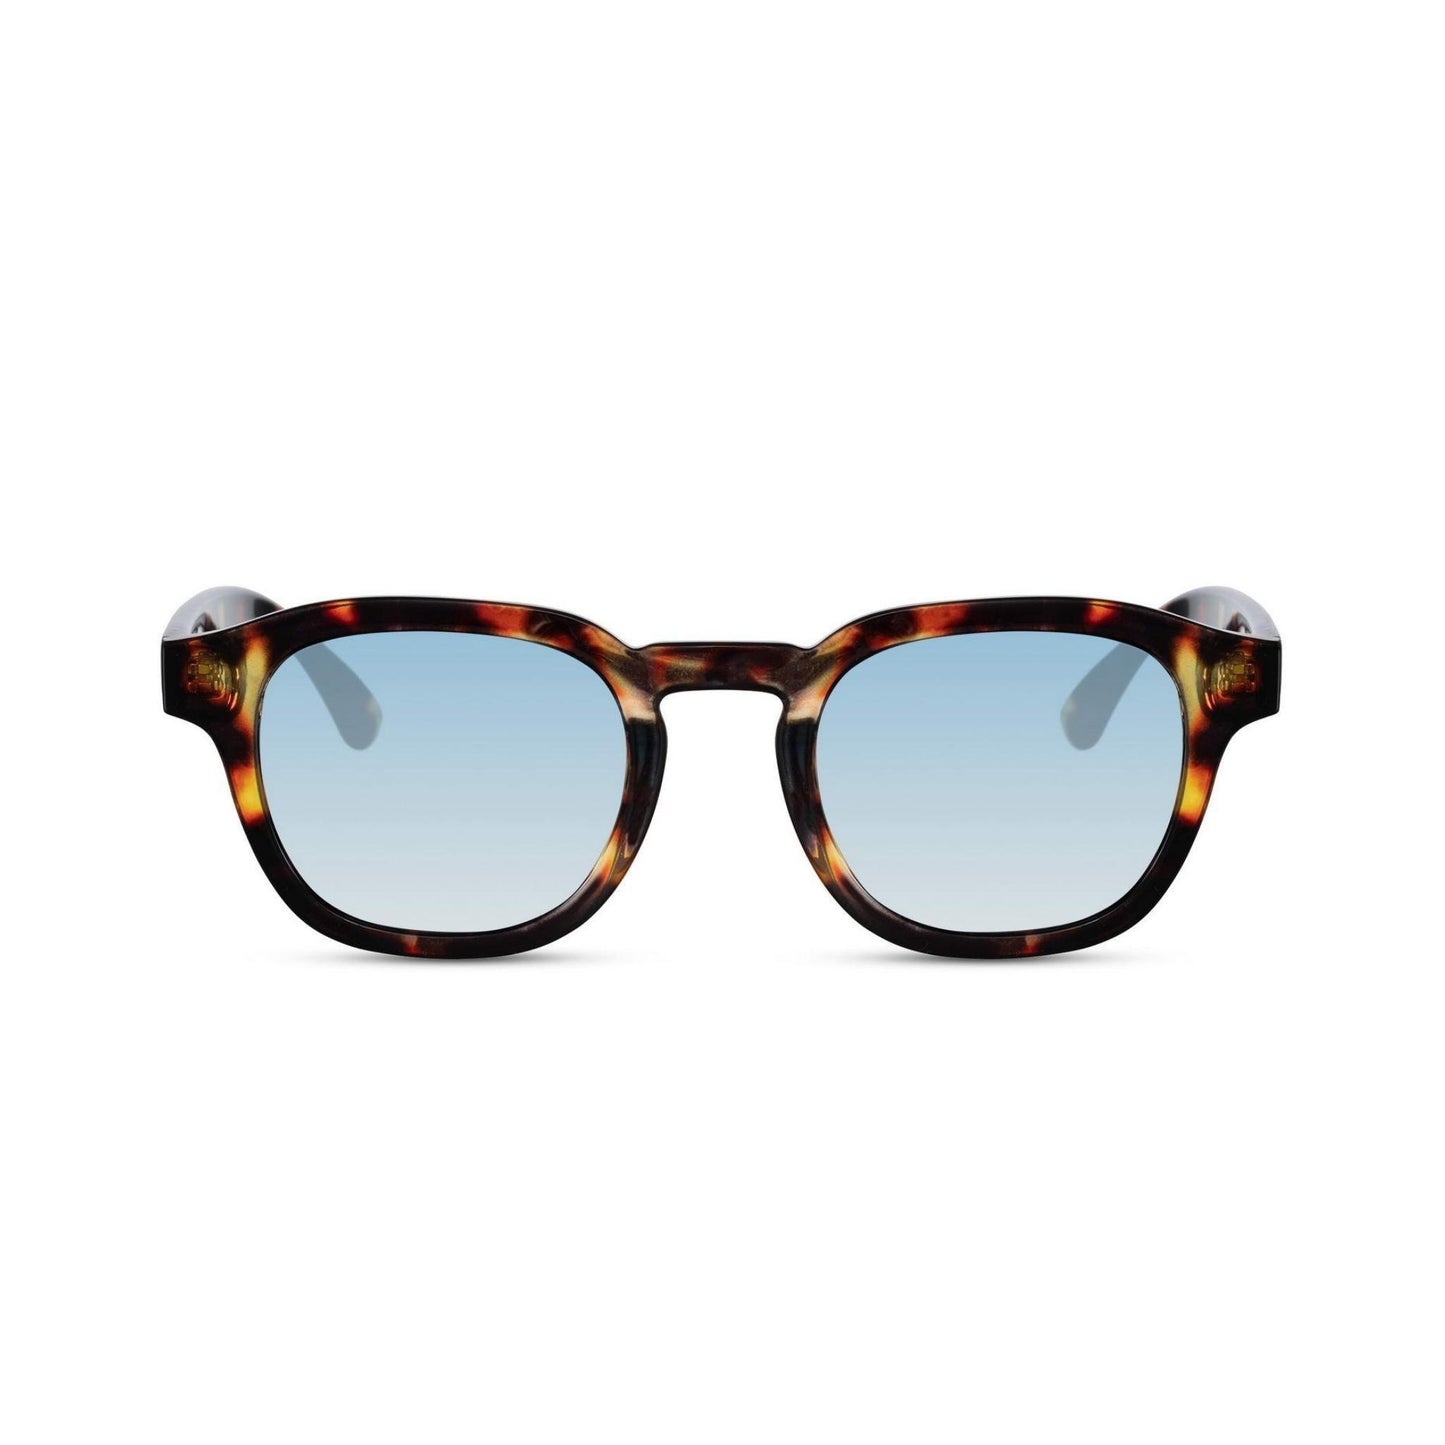 Γυαλιά ηλίου Montreal της Exposure Sunglasses με προστασία UV400 με καφέ σκελετό και μπλε φακό.